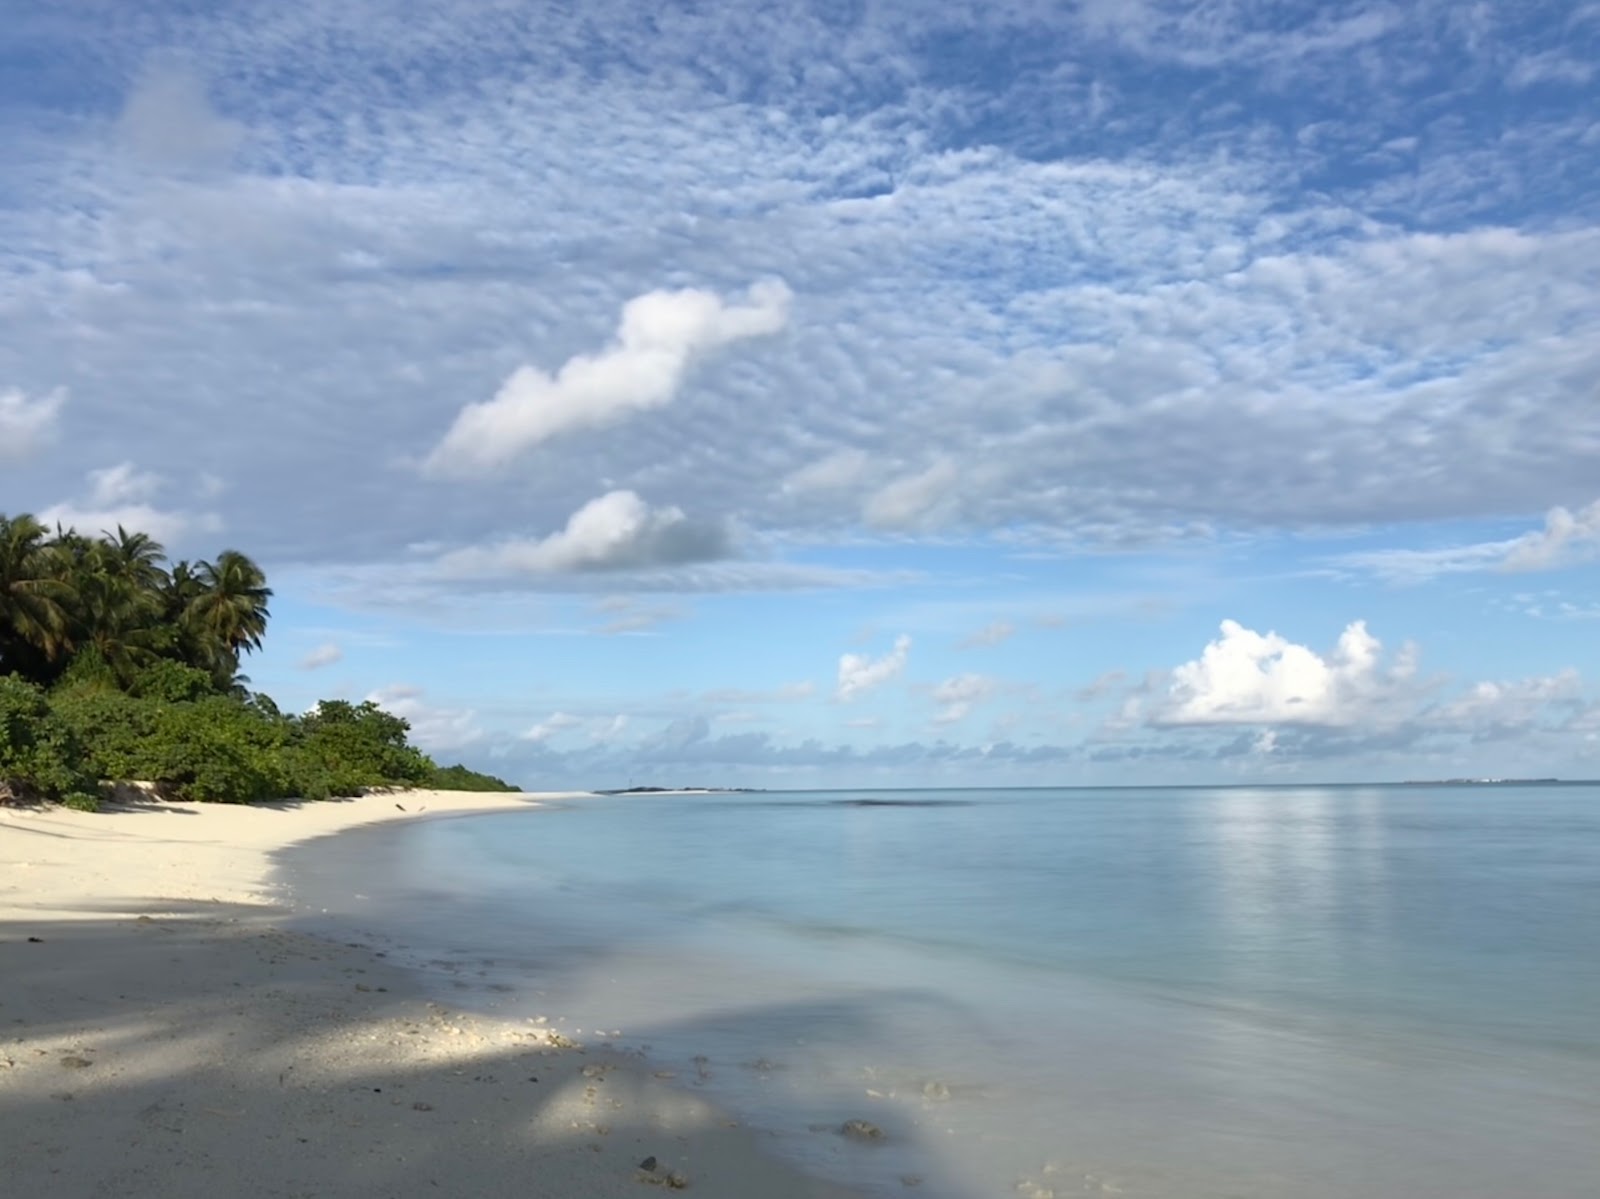 Fotografie cu Fenfushee Island cu o suprafață de nisip alb